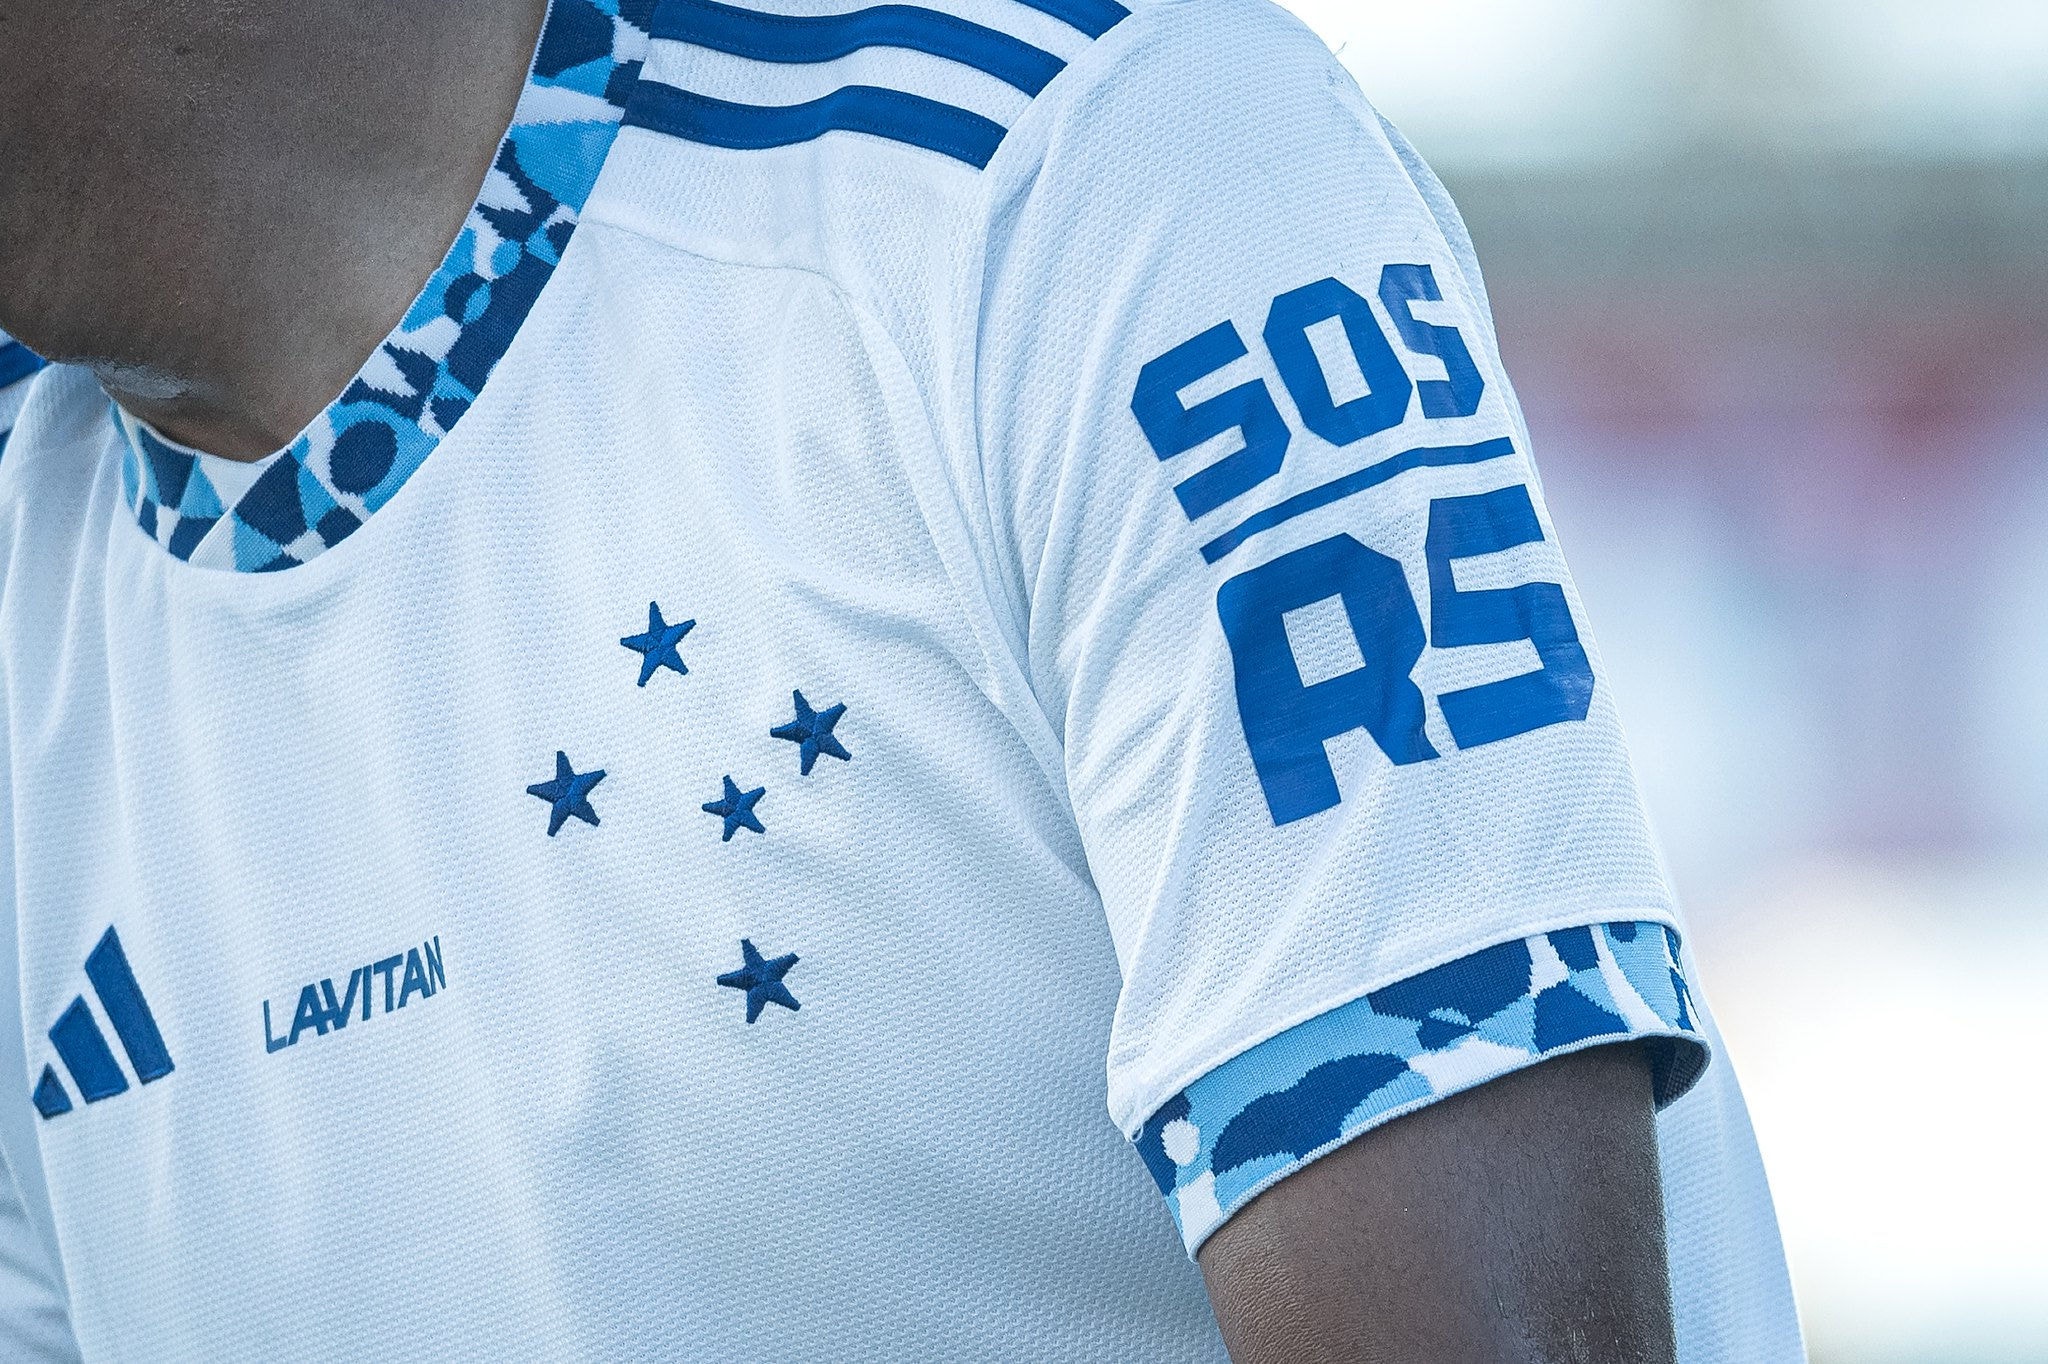 O Cruzeiro pediu ajuda para as vítimas do RS com uma mensagem na camisa no jogo contra o Atlético-GO 